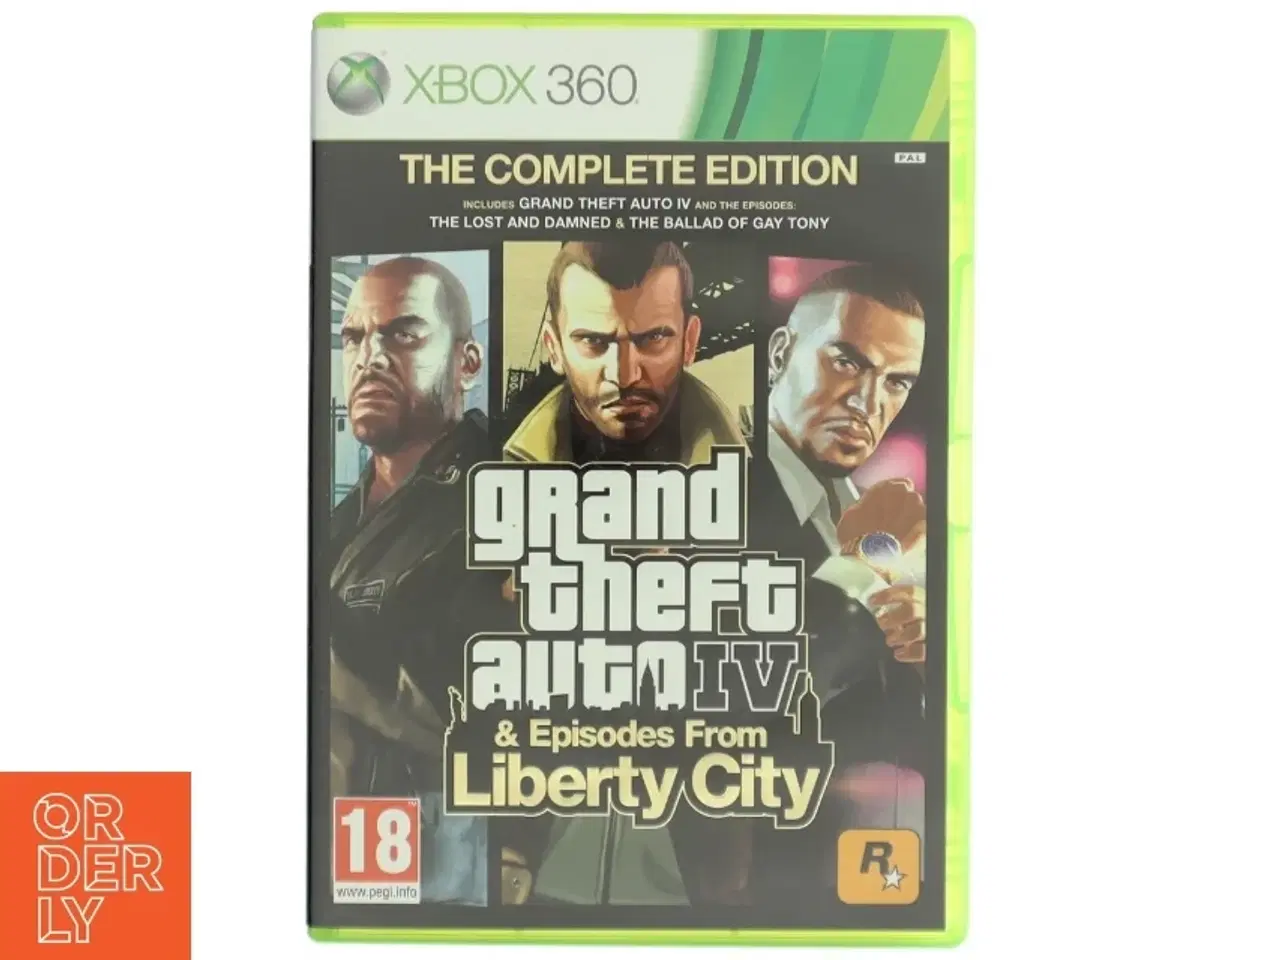 Billede 1 - Grand Theft Auto IV: Complete Edition til Xbox 360 fra Rockstar Games